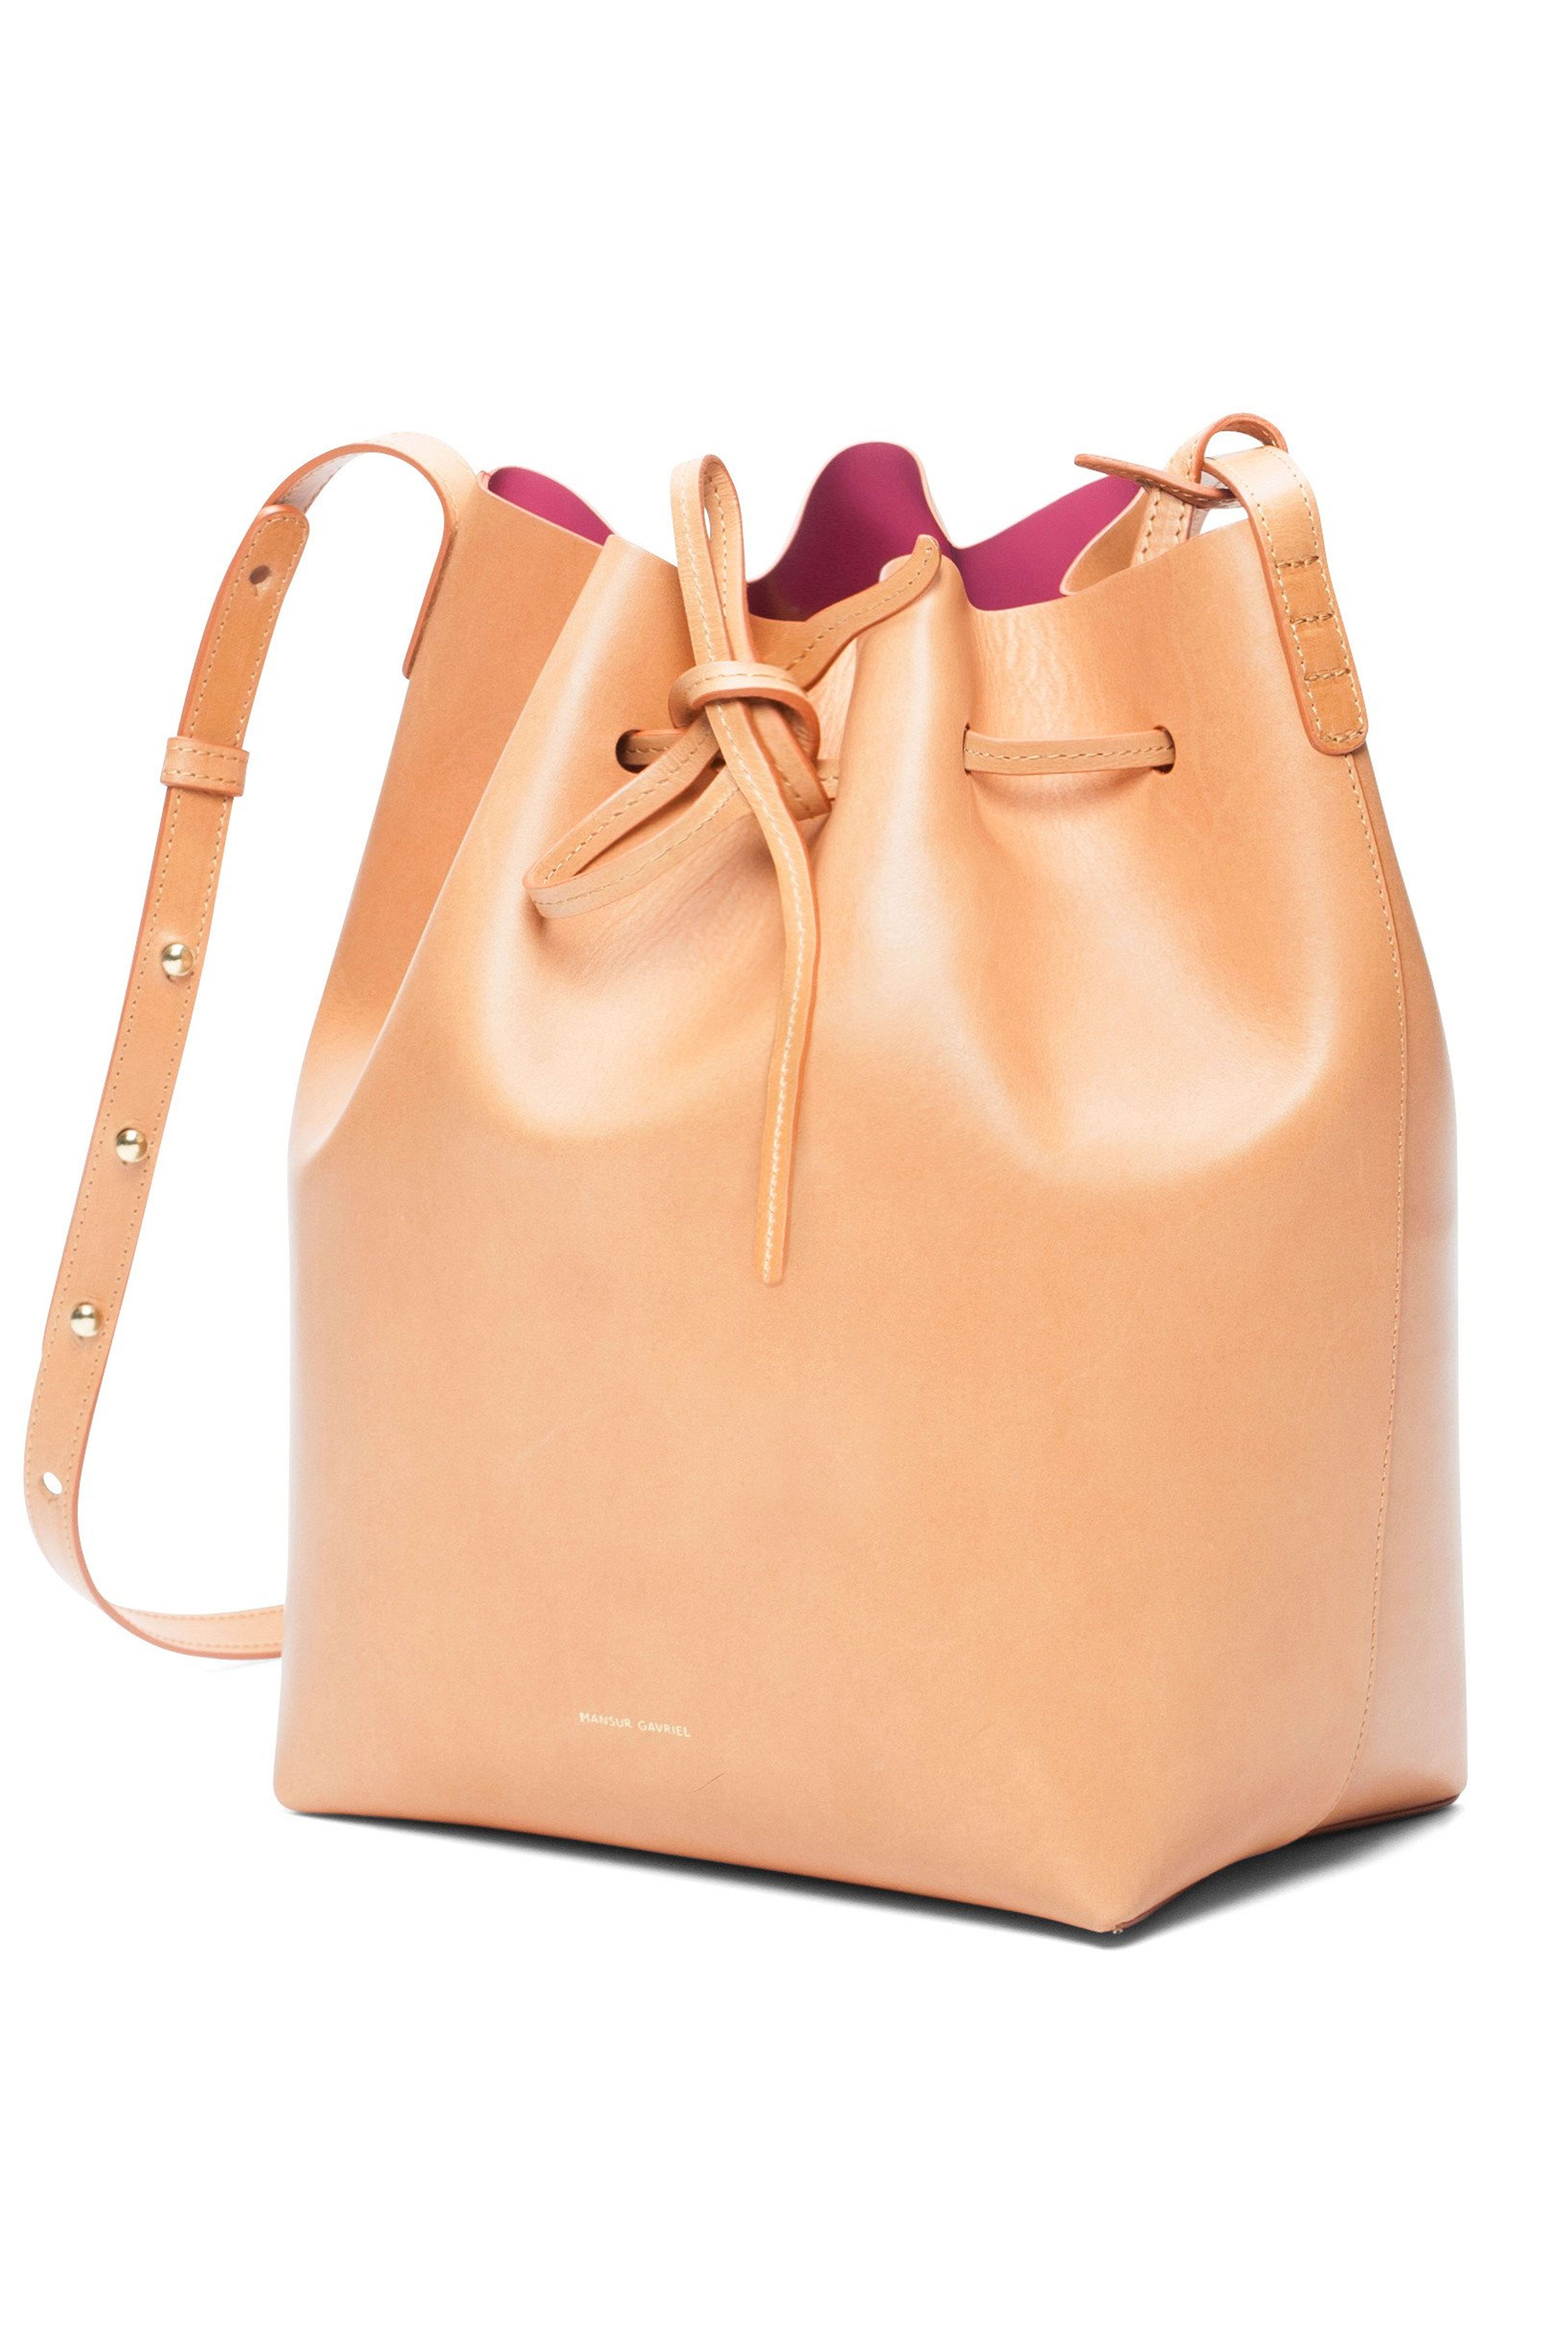 Why Do Women Own So Many Handbags?